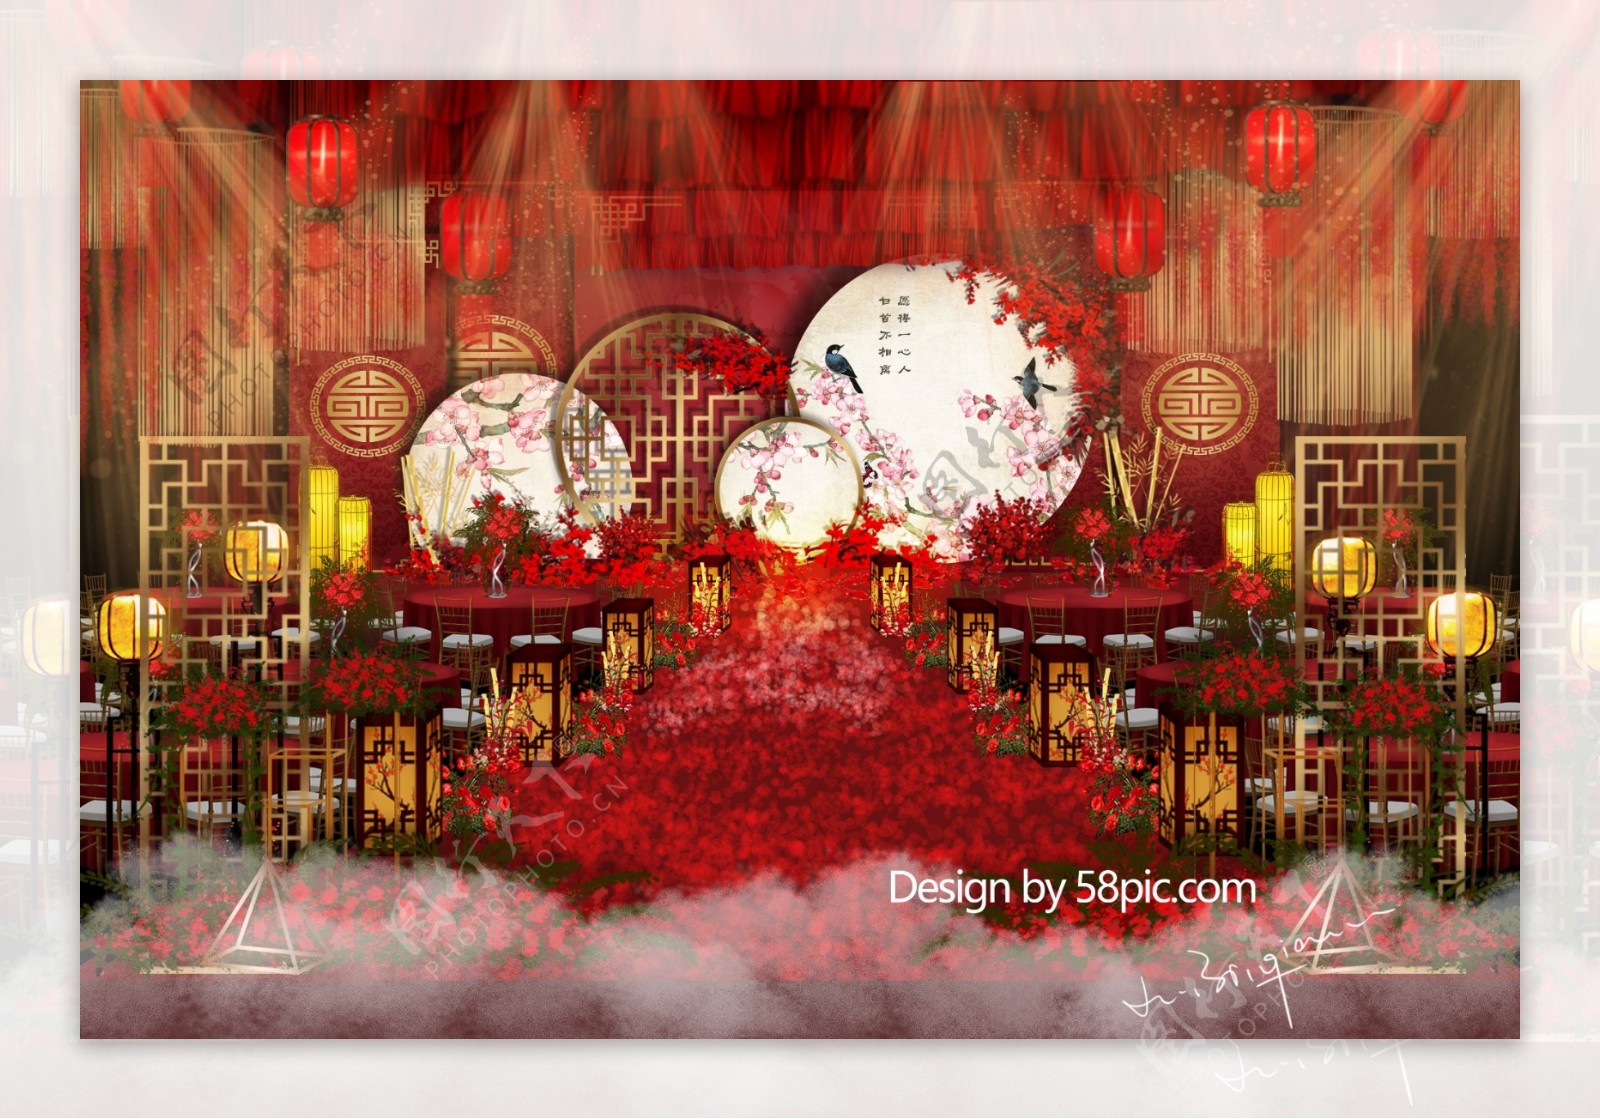 红色中式婚礼仪式区